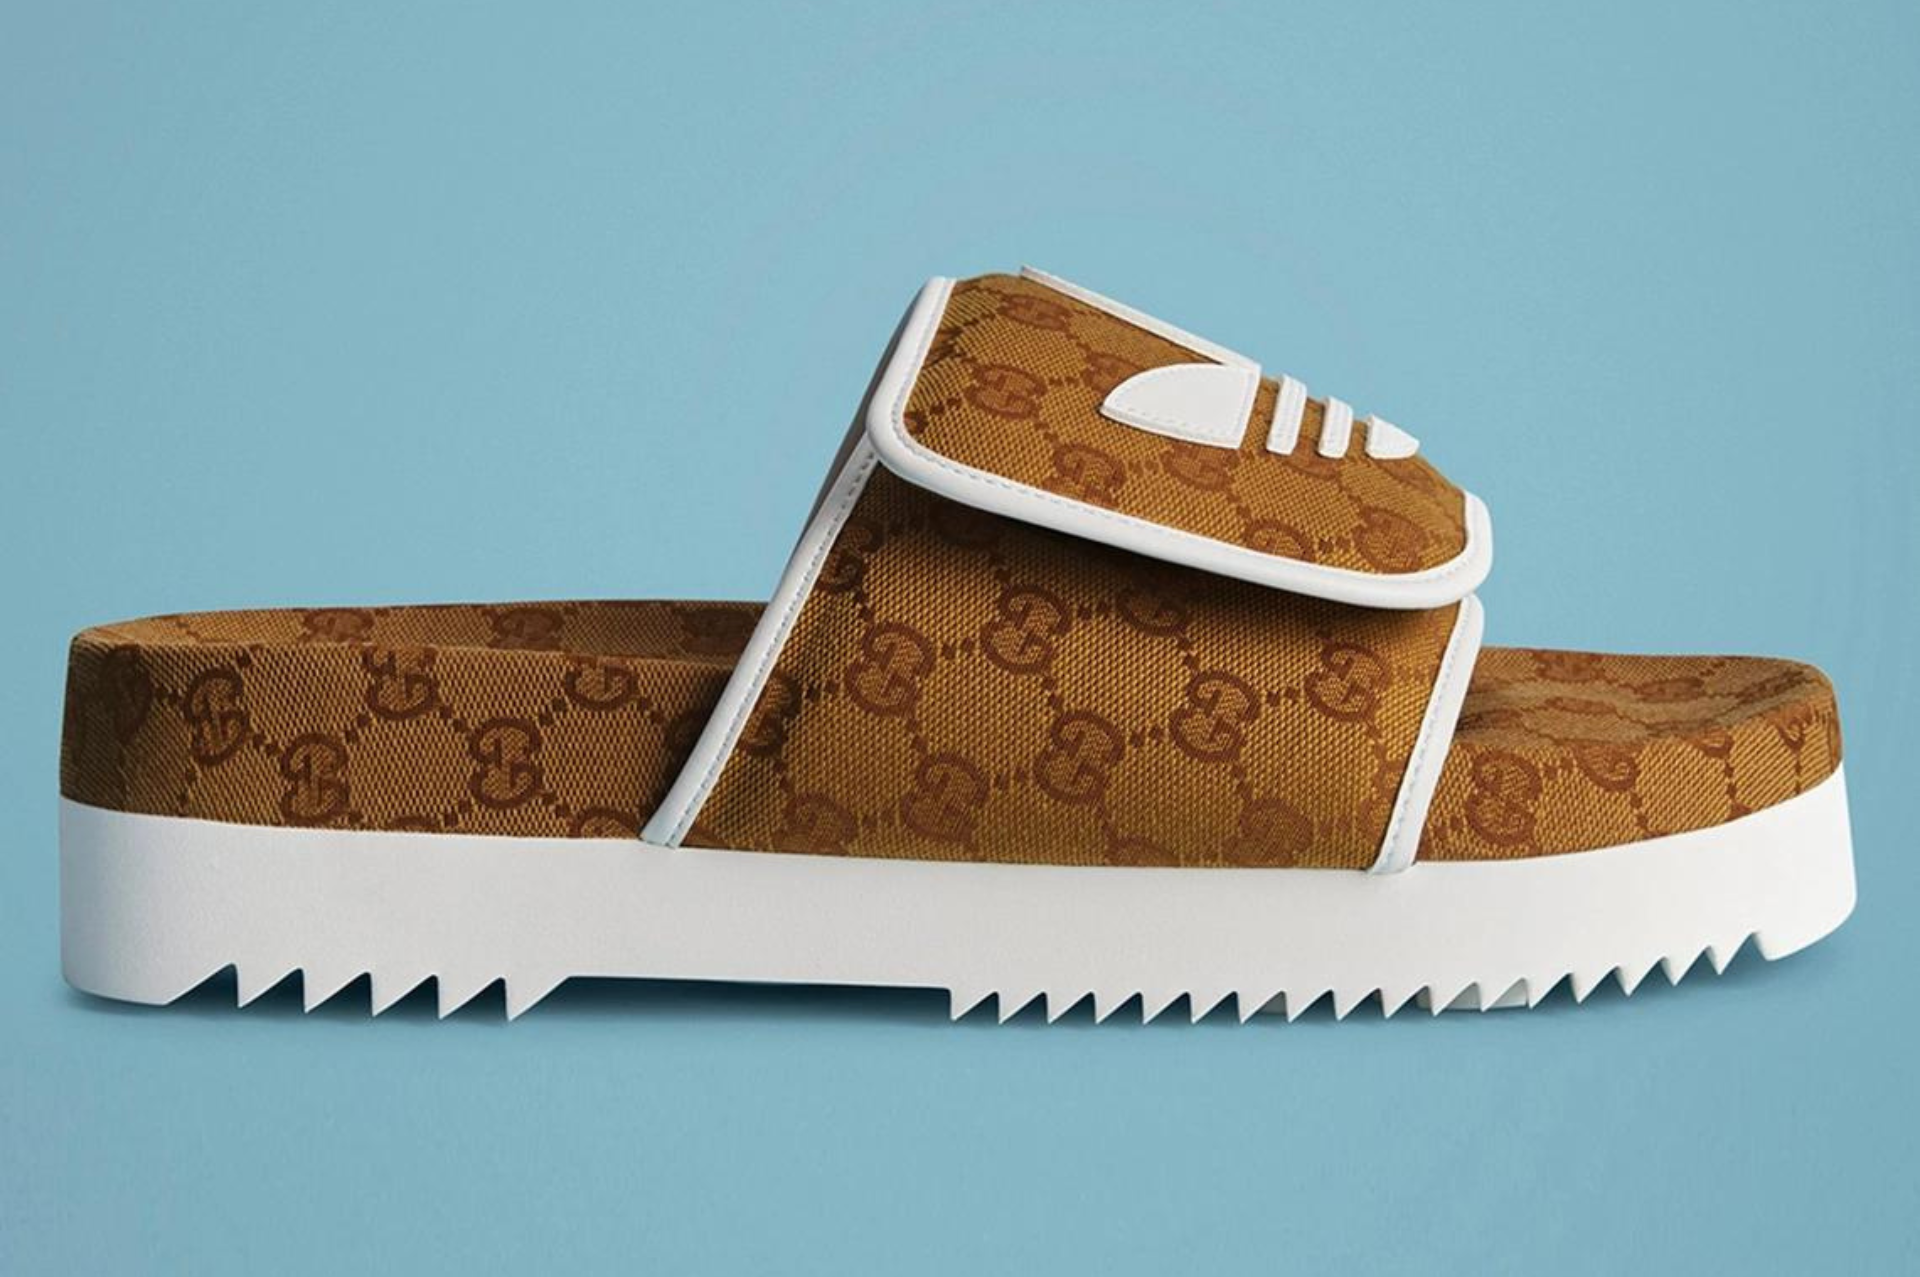 Gucci y adidas unen fuerzas nuevamente: La revolucionaria colección de calzado 2023